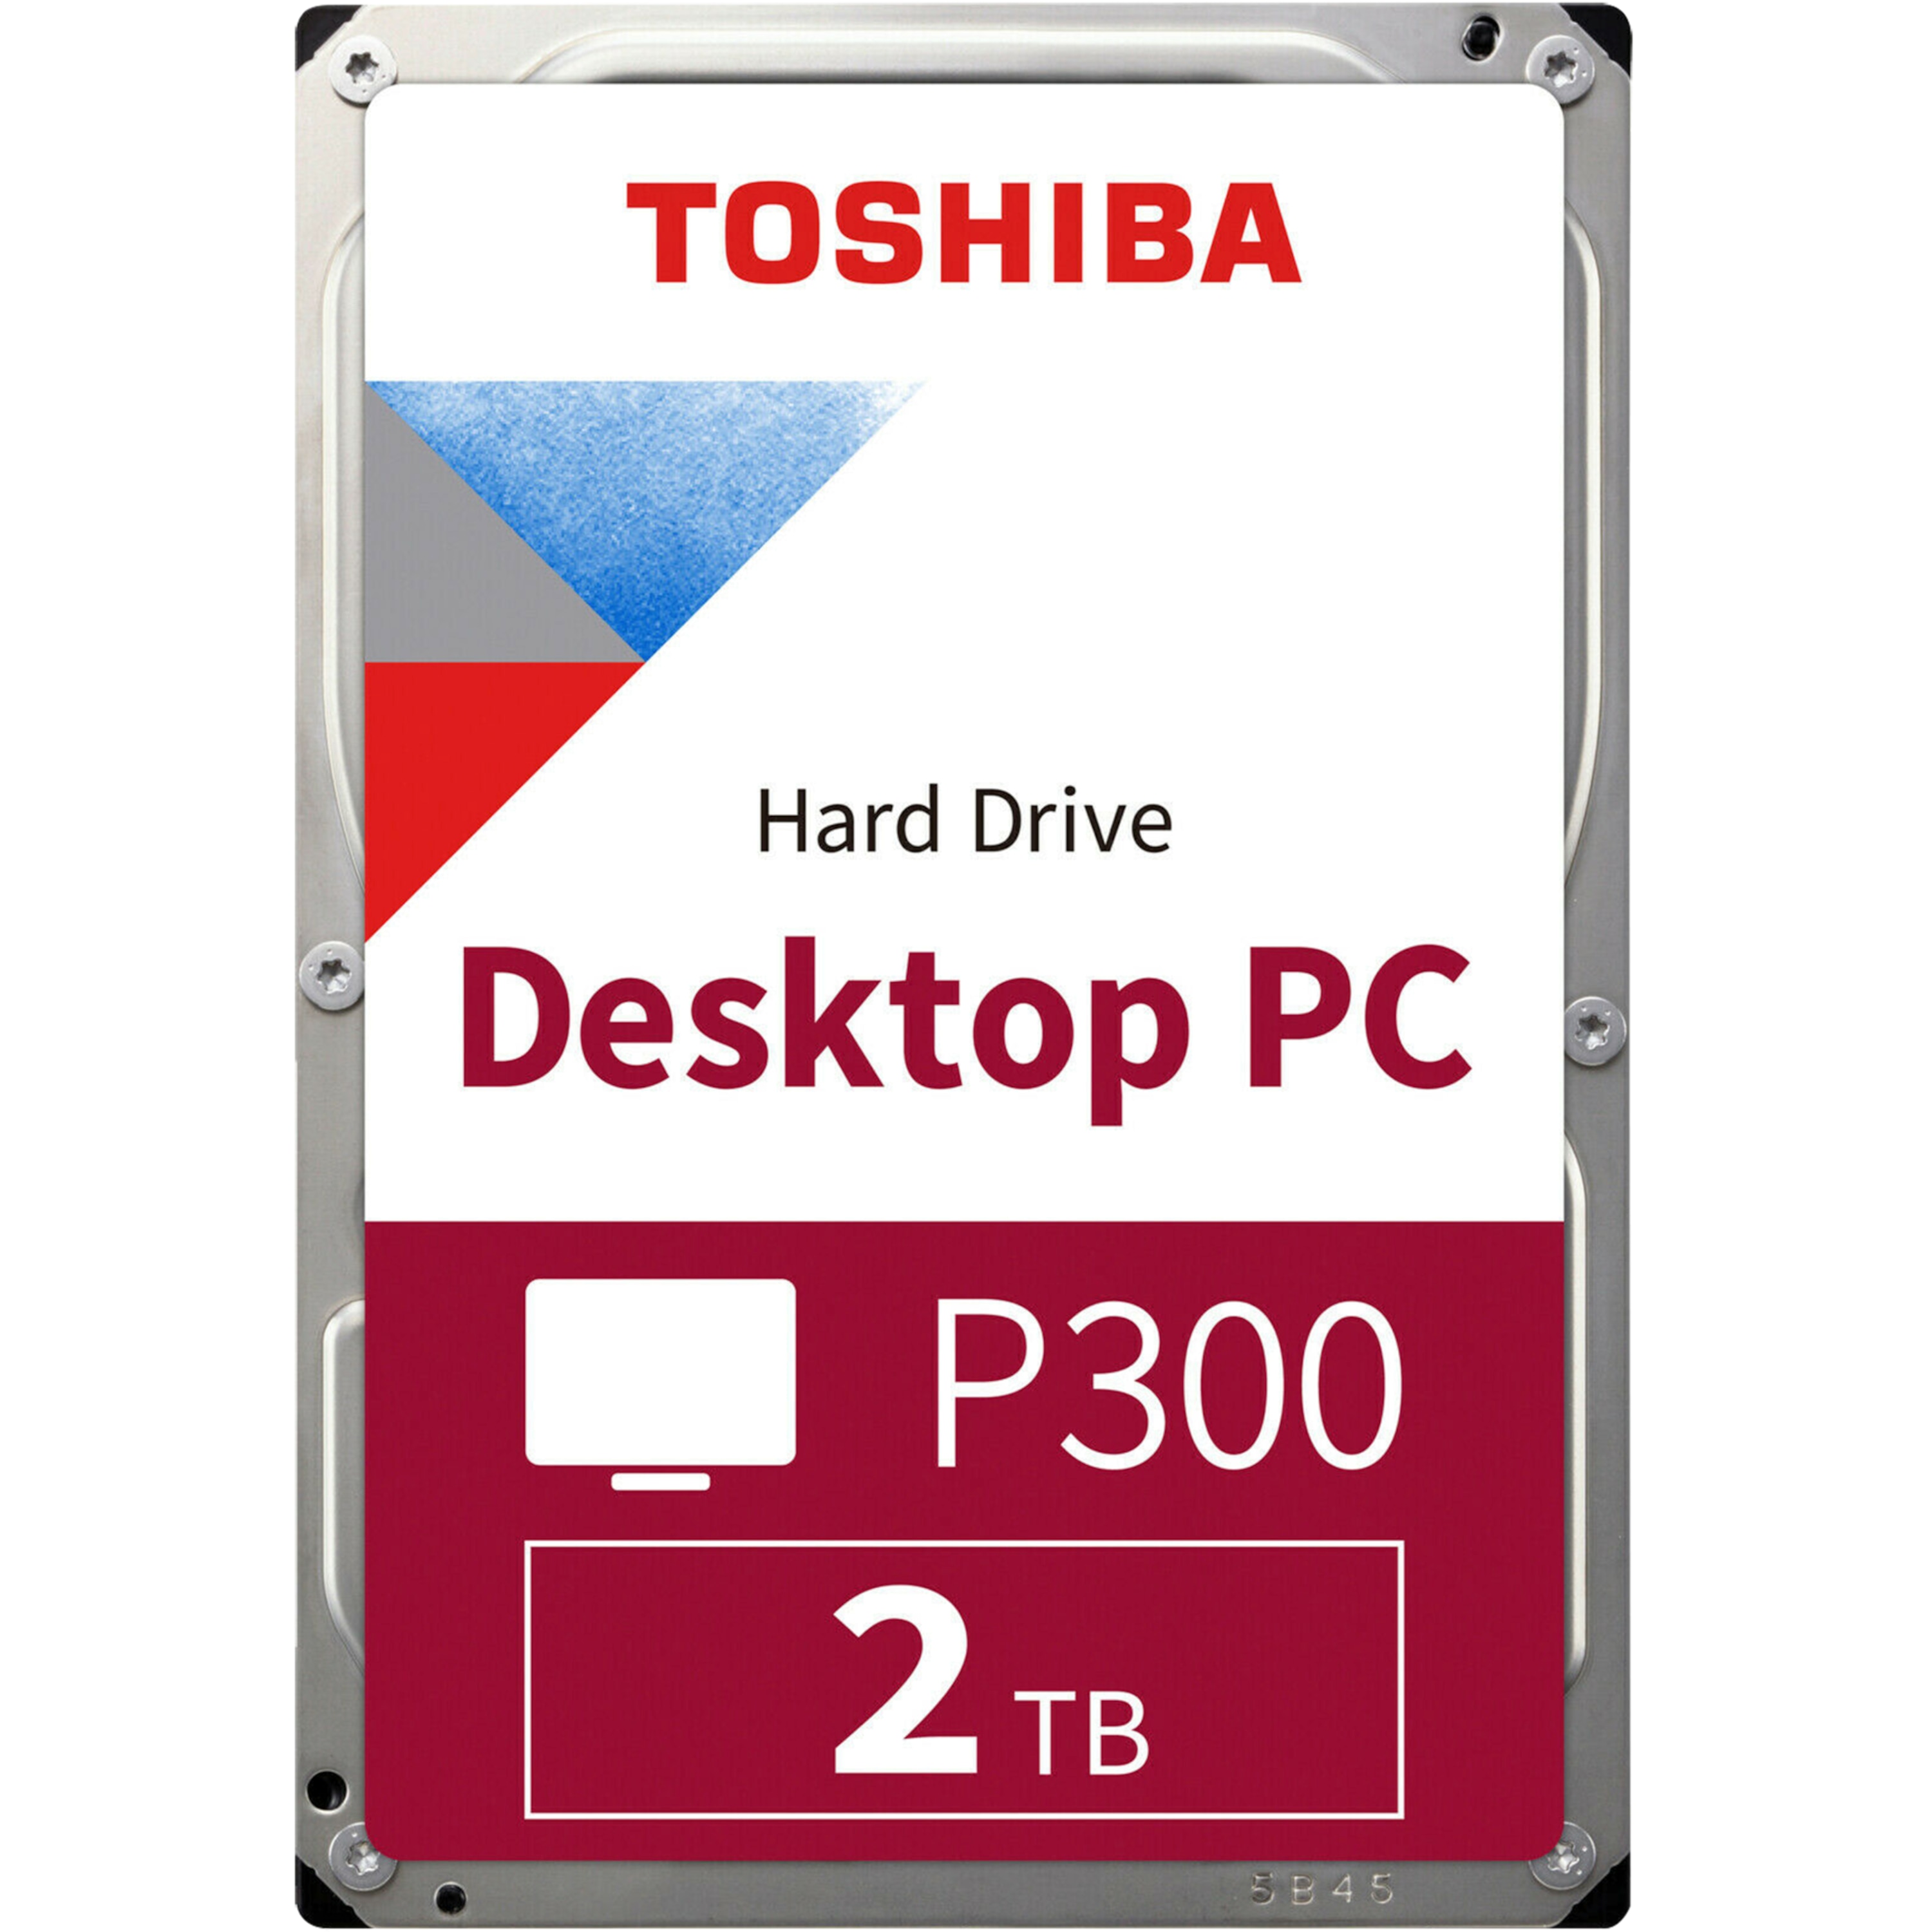 TOSHIBA P300 Desktop PC Hard Drive, interne HDD, 3,5'' Festplatte mit 2 TB Speicherkapazität, 7200 U/min, leistungsstark & zuverlässig